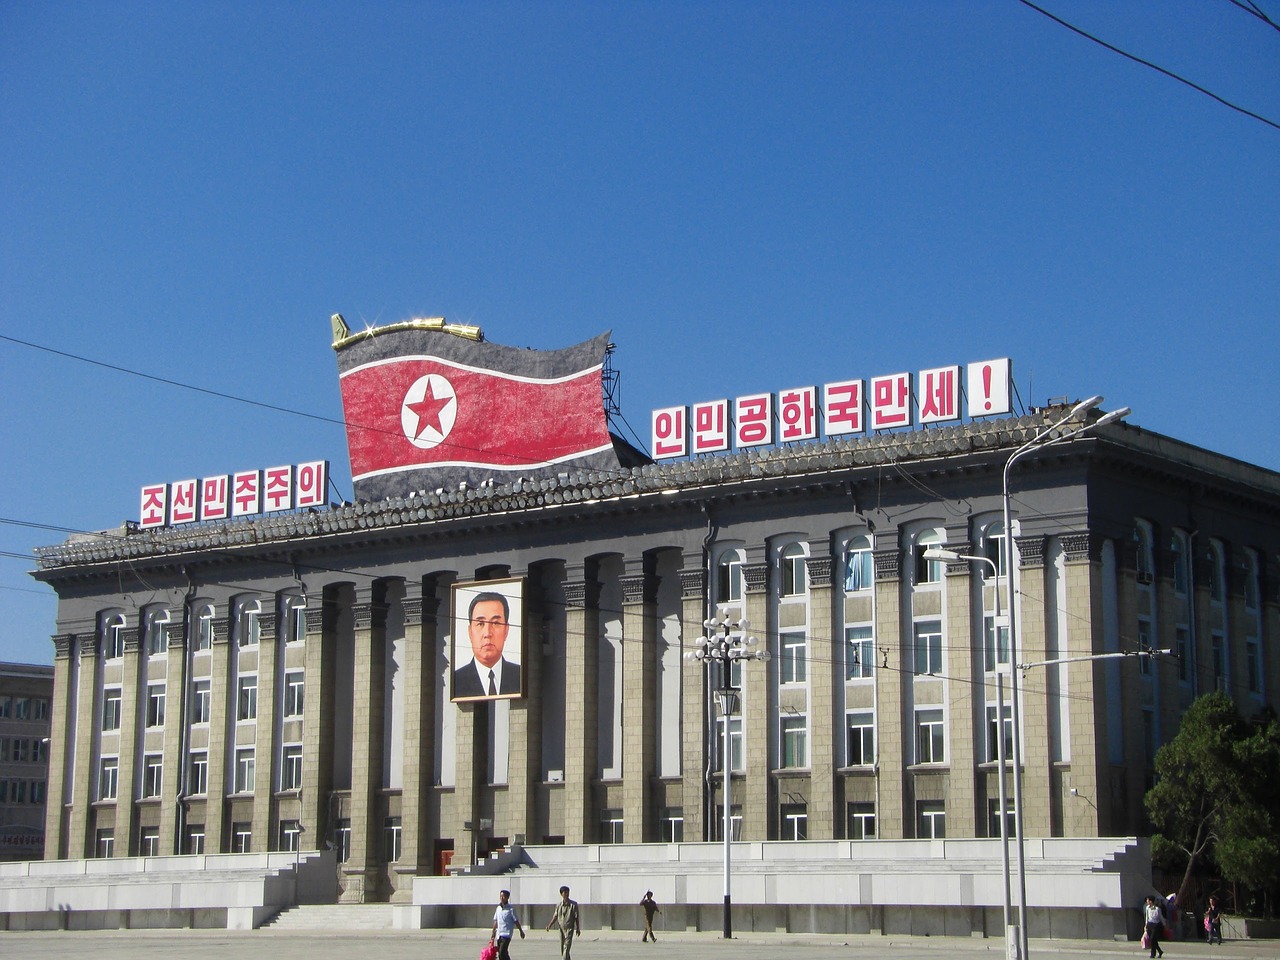 मस्कोलाई हतियार बेच्ने योजना छैन : उत्तर कोरिया